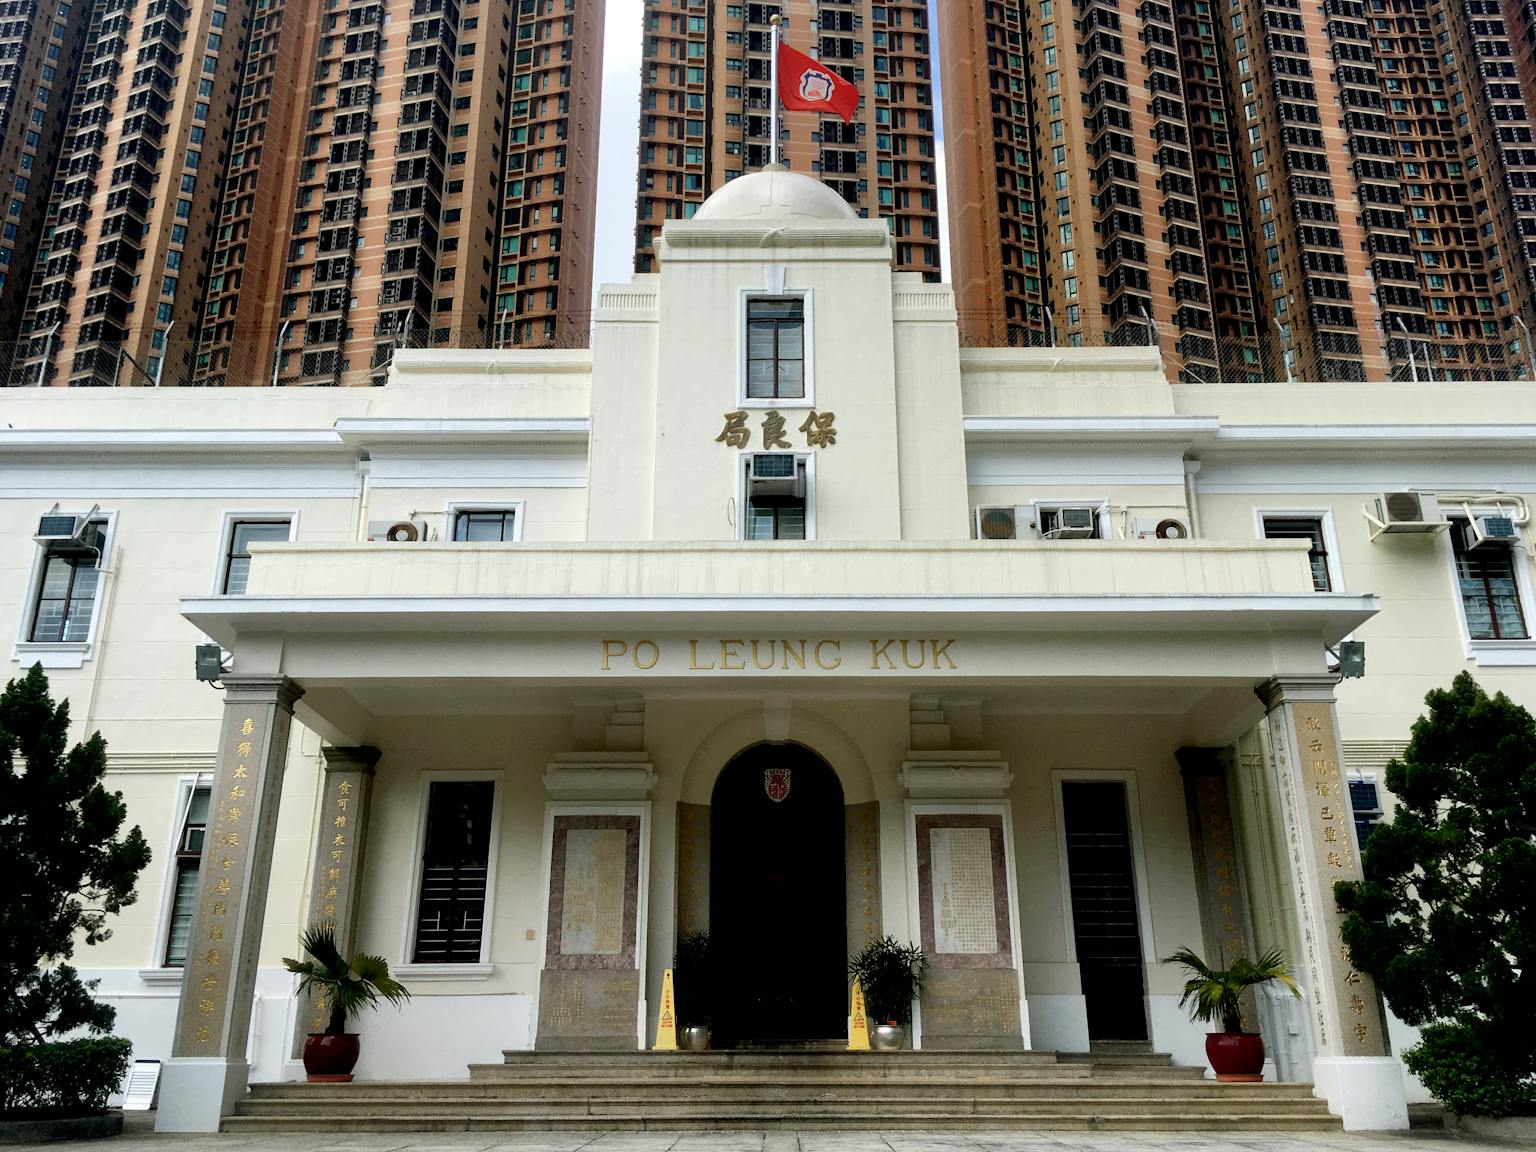 Po Leung Kuk Main Building